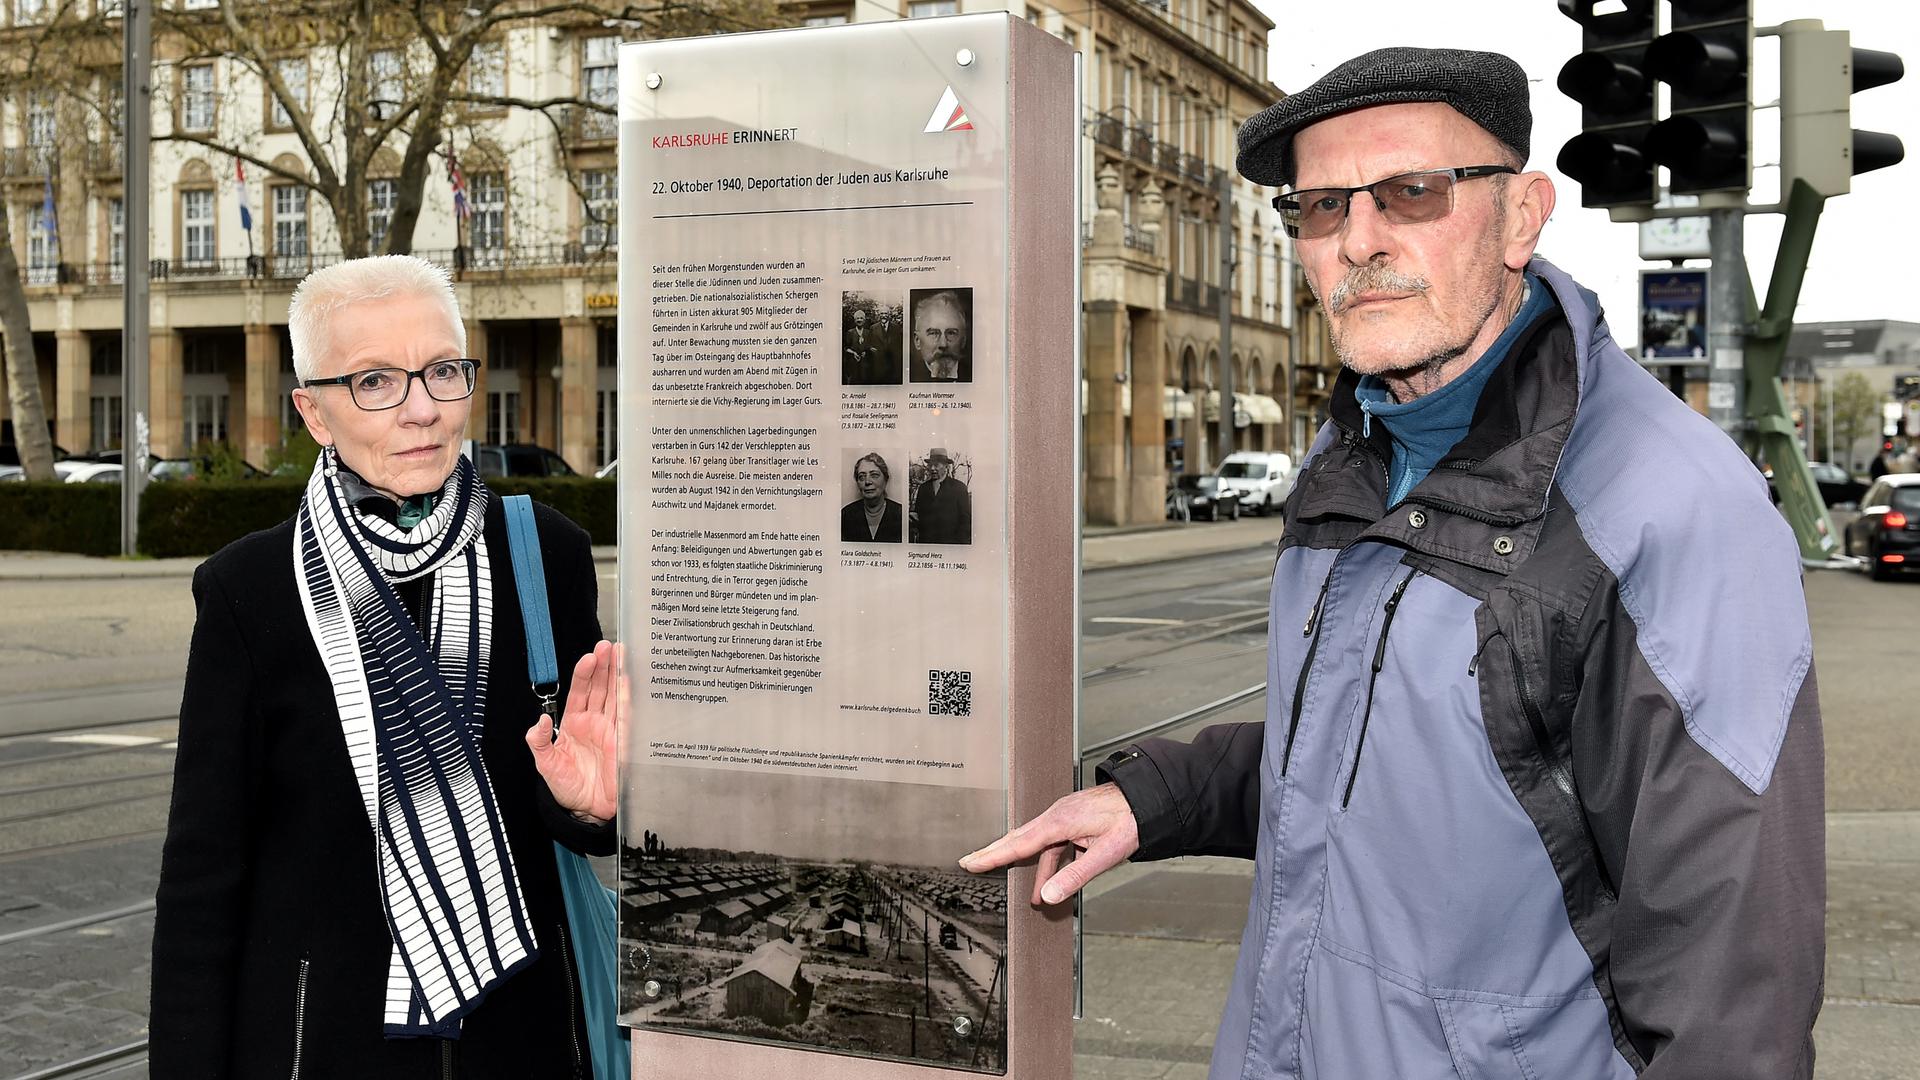 Ausgangspunkt der Verschleppung: Eine Stele erinnert daran, dass 1940 am Karlsruher Hauptbahnhof 1.000 Juden zusammengetrieben und nach Gurs verschleppt wurden. Das Ehepaar Brigitte und Gerhard Brändle recherchiert seit Jahrzehnten zur Deportation.